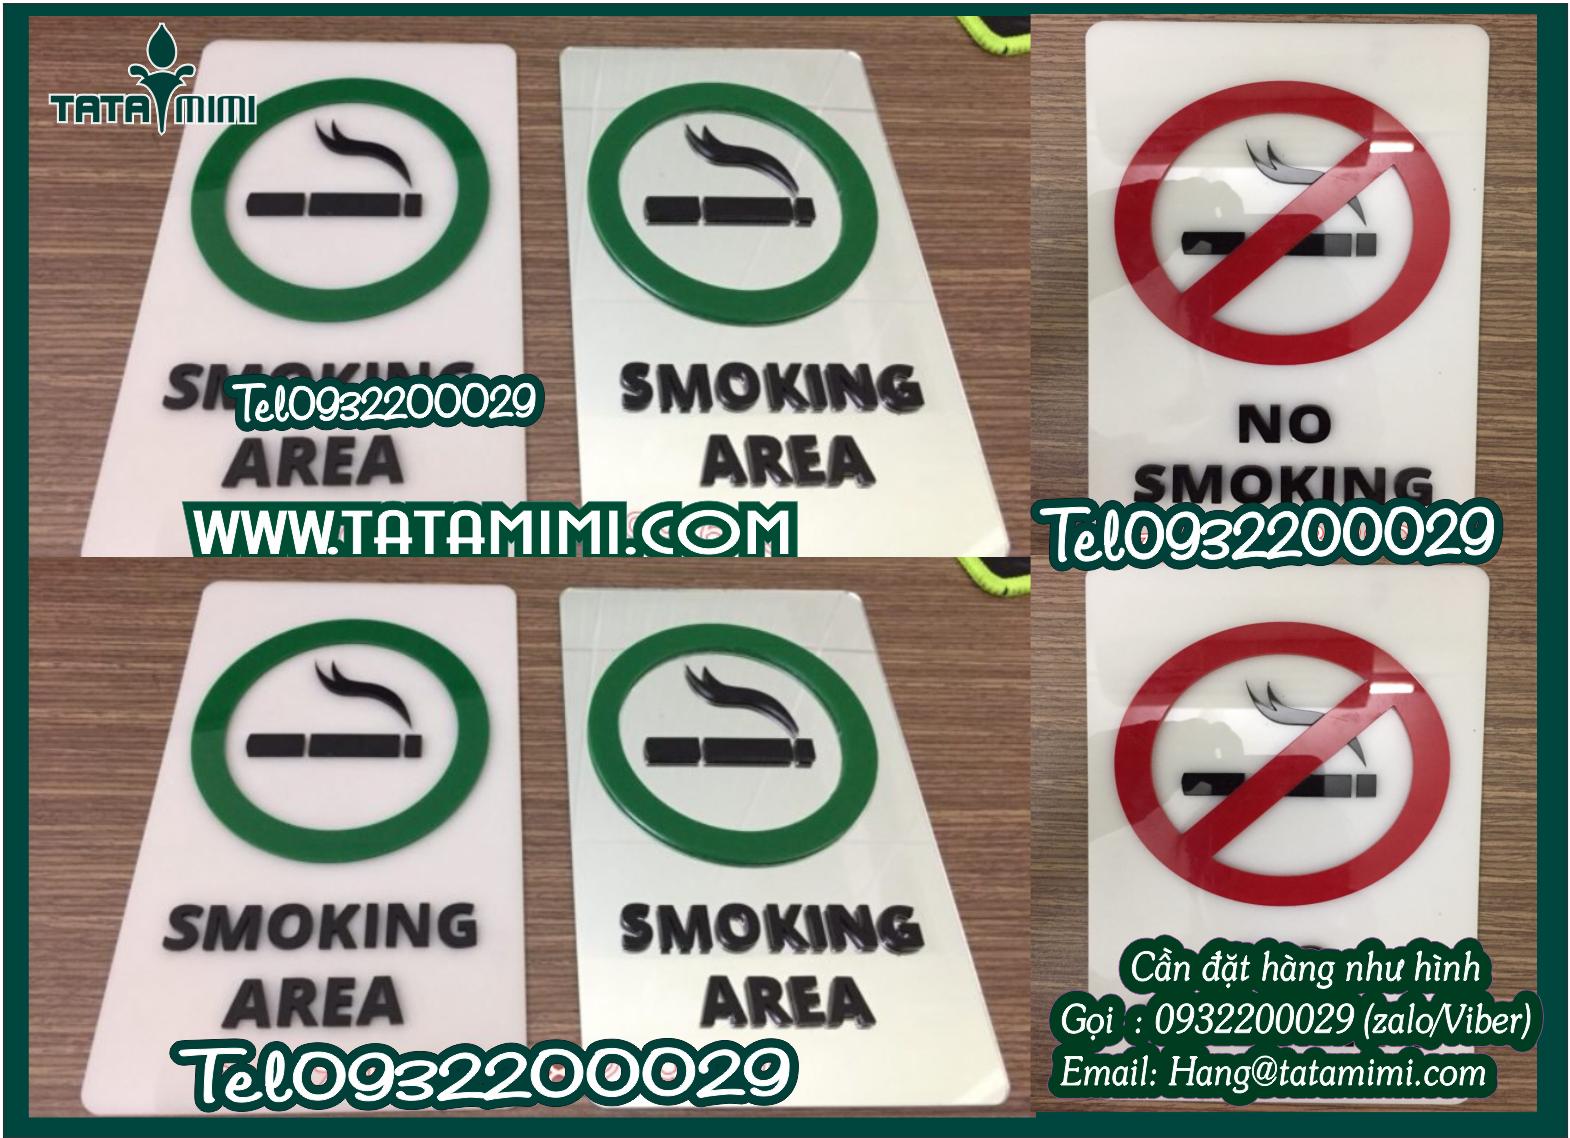 Bảng cấm hút thuốc để bảo vệ sức khỏe